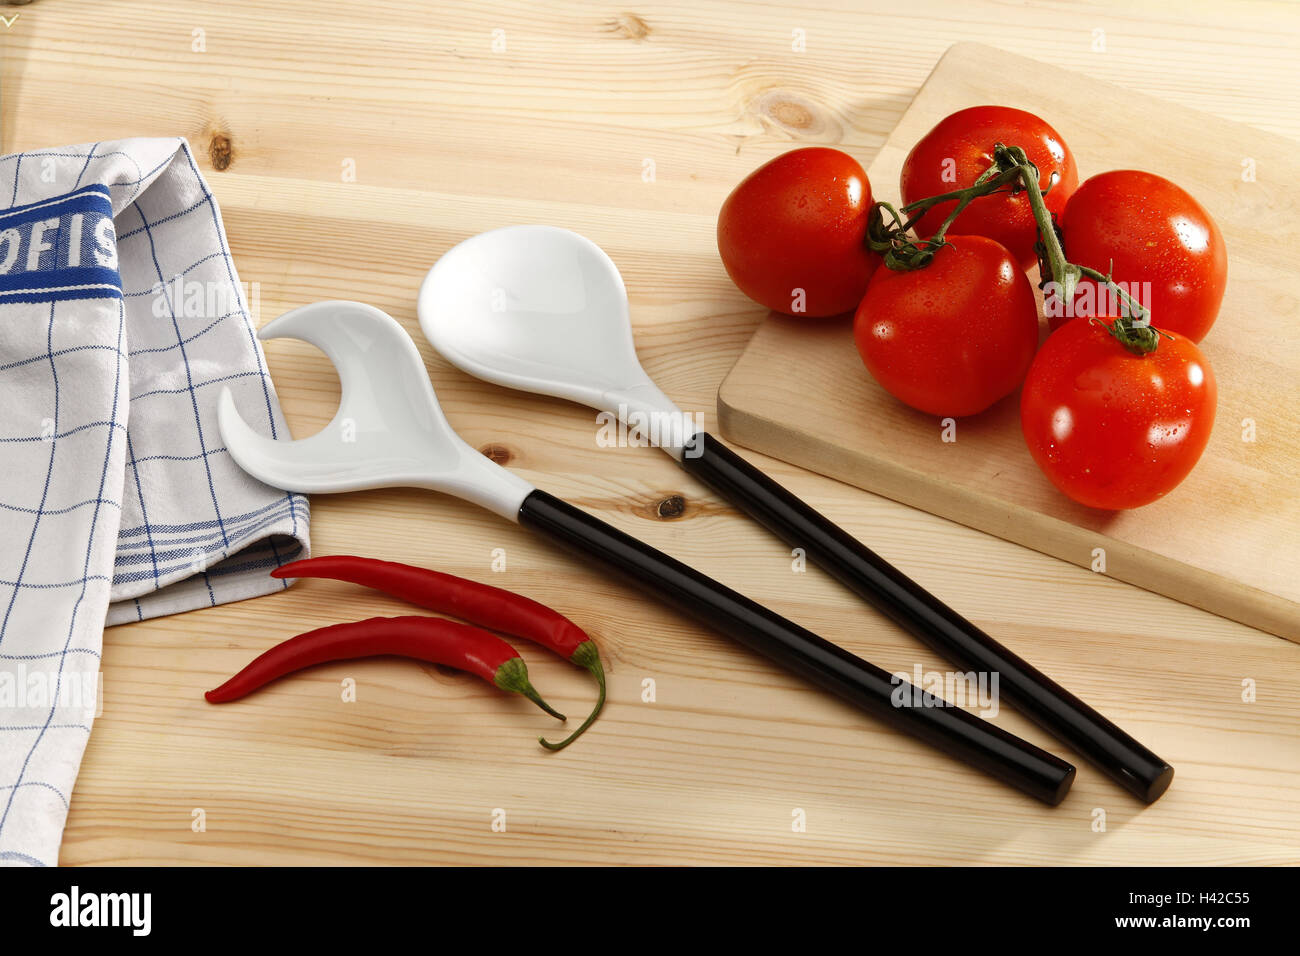 Küchentisch mit Salatbesteck, Tomaten, Chili, Stockfoto